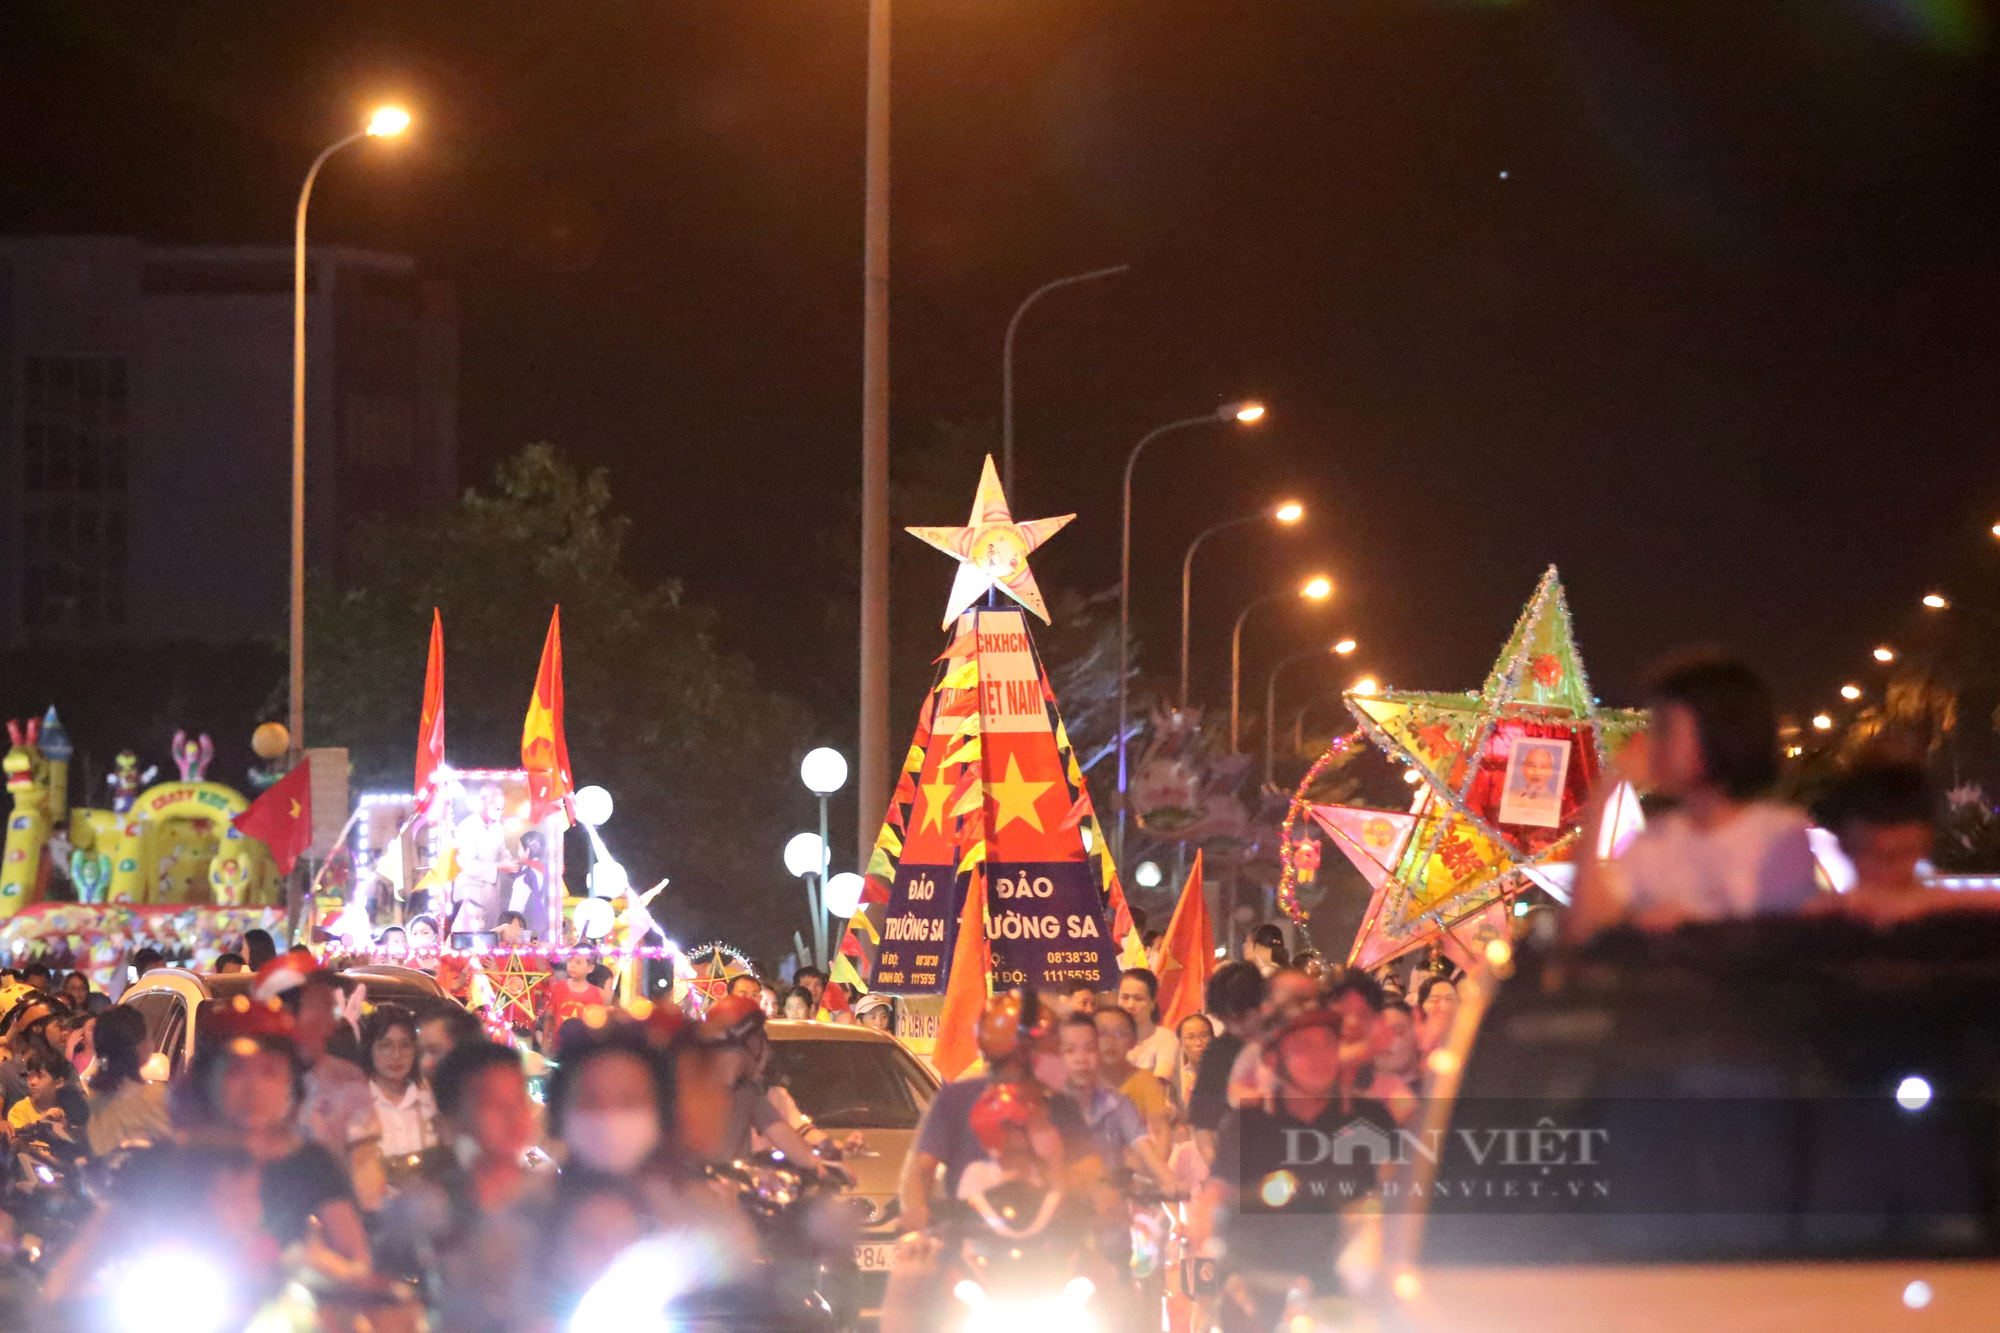 Lần đầu tiên Hà Tĩnh tổ chức rước đèn trung thu khổng lồ, đẹp lung linh, người dân trầm trồ đổ ra đường xem - Ảnh 3.